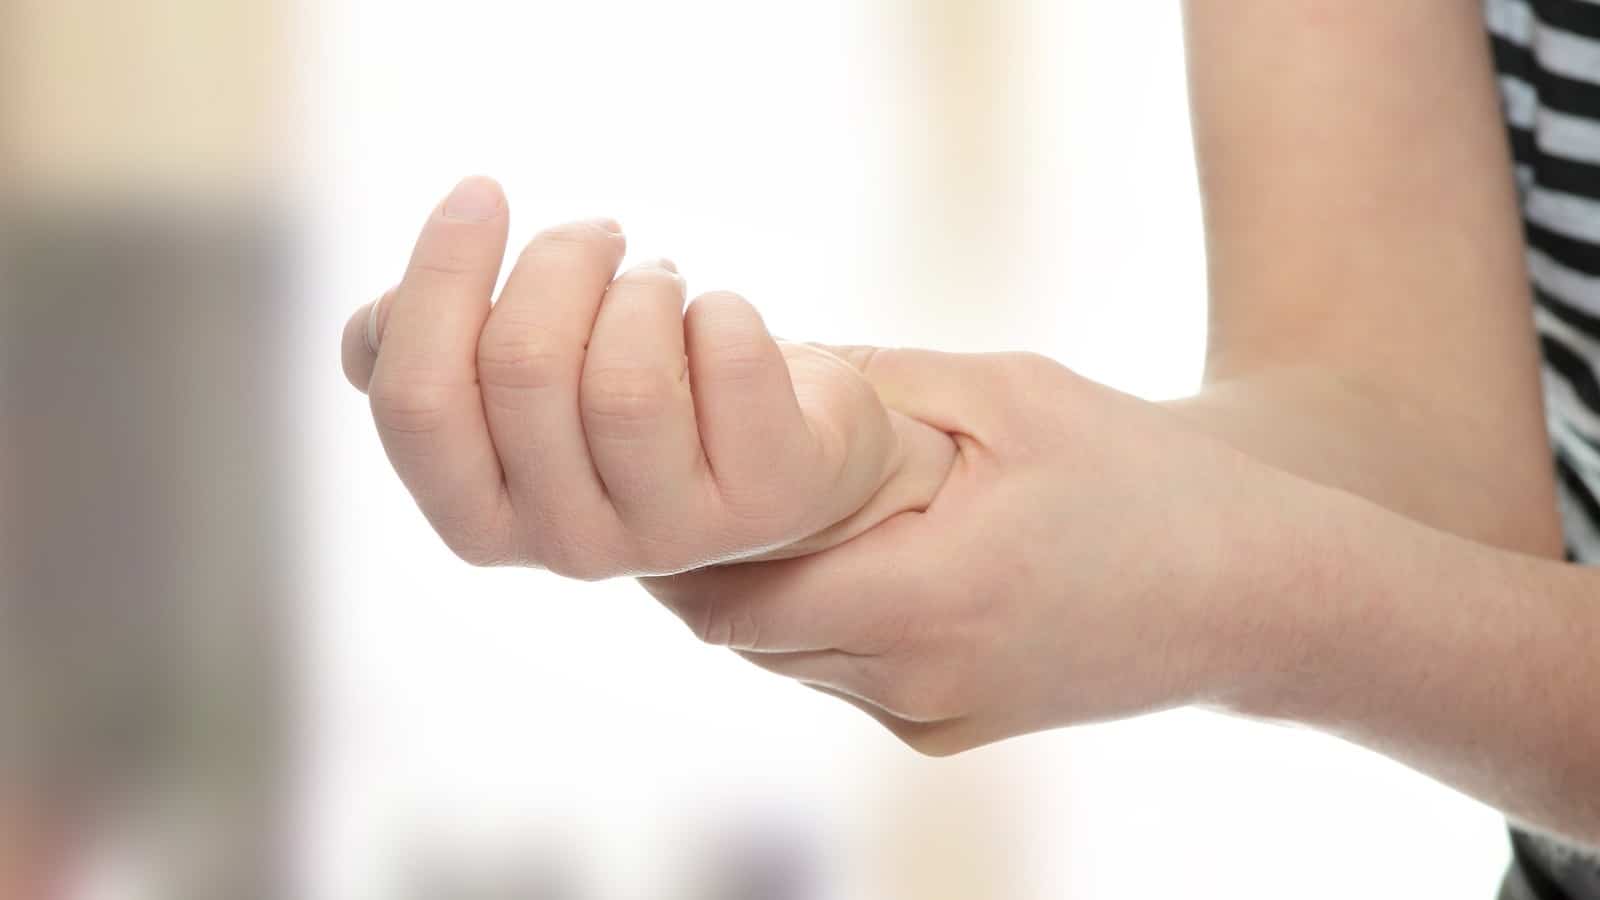 Arthrite goutteuse : La maladie dite de la goutte, késako exactement ?